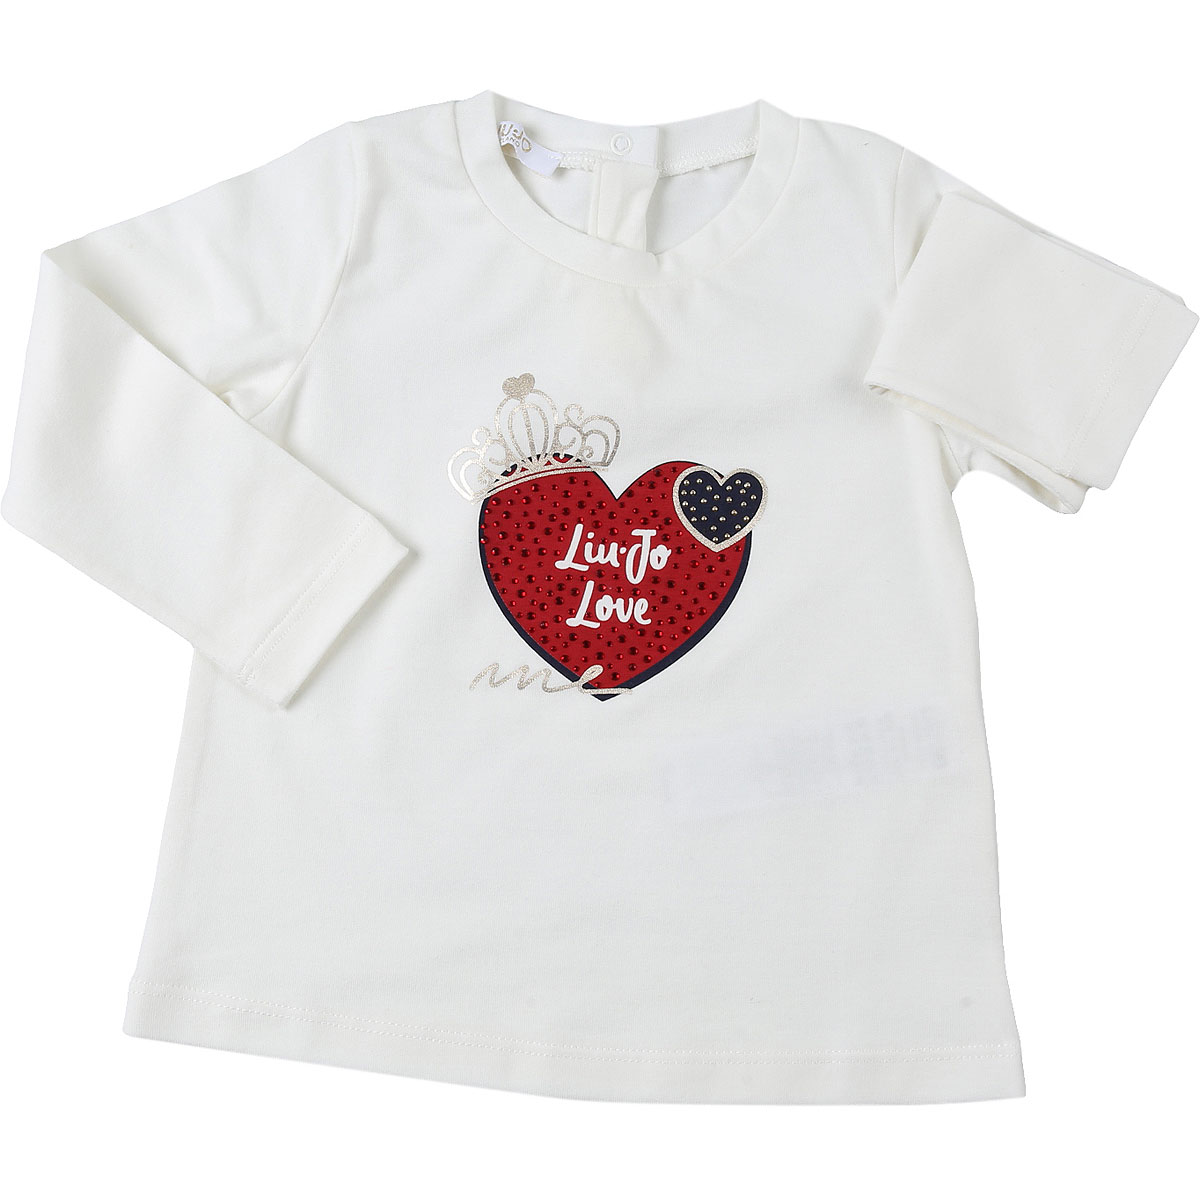 Liu Jo Baby T-Shirt für Mädchen Günstig im Sale, Schnee Weiß, Baumwolle, 2017, 12M 18M 9M